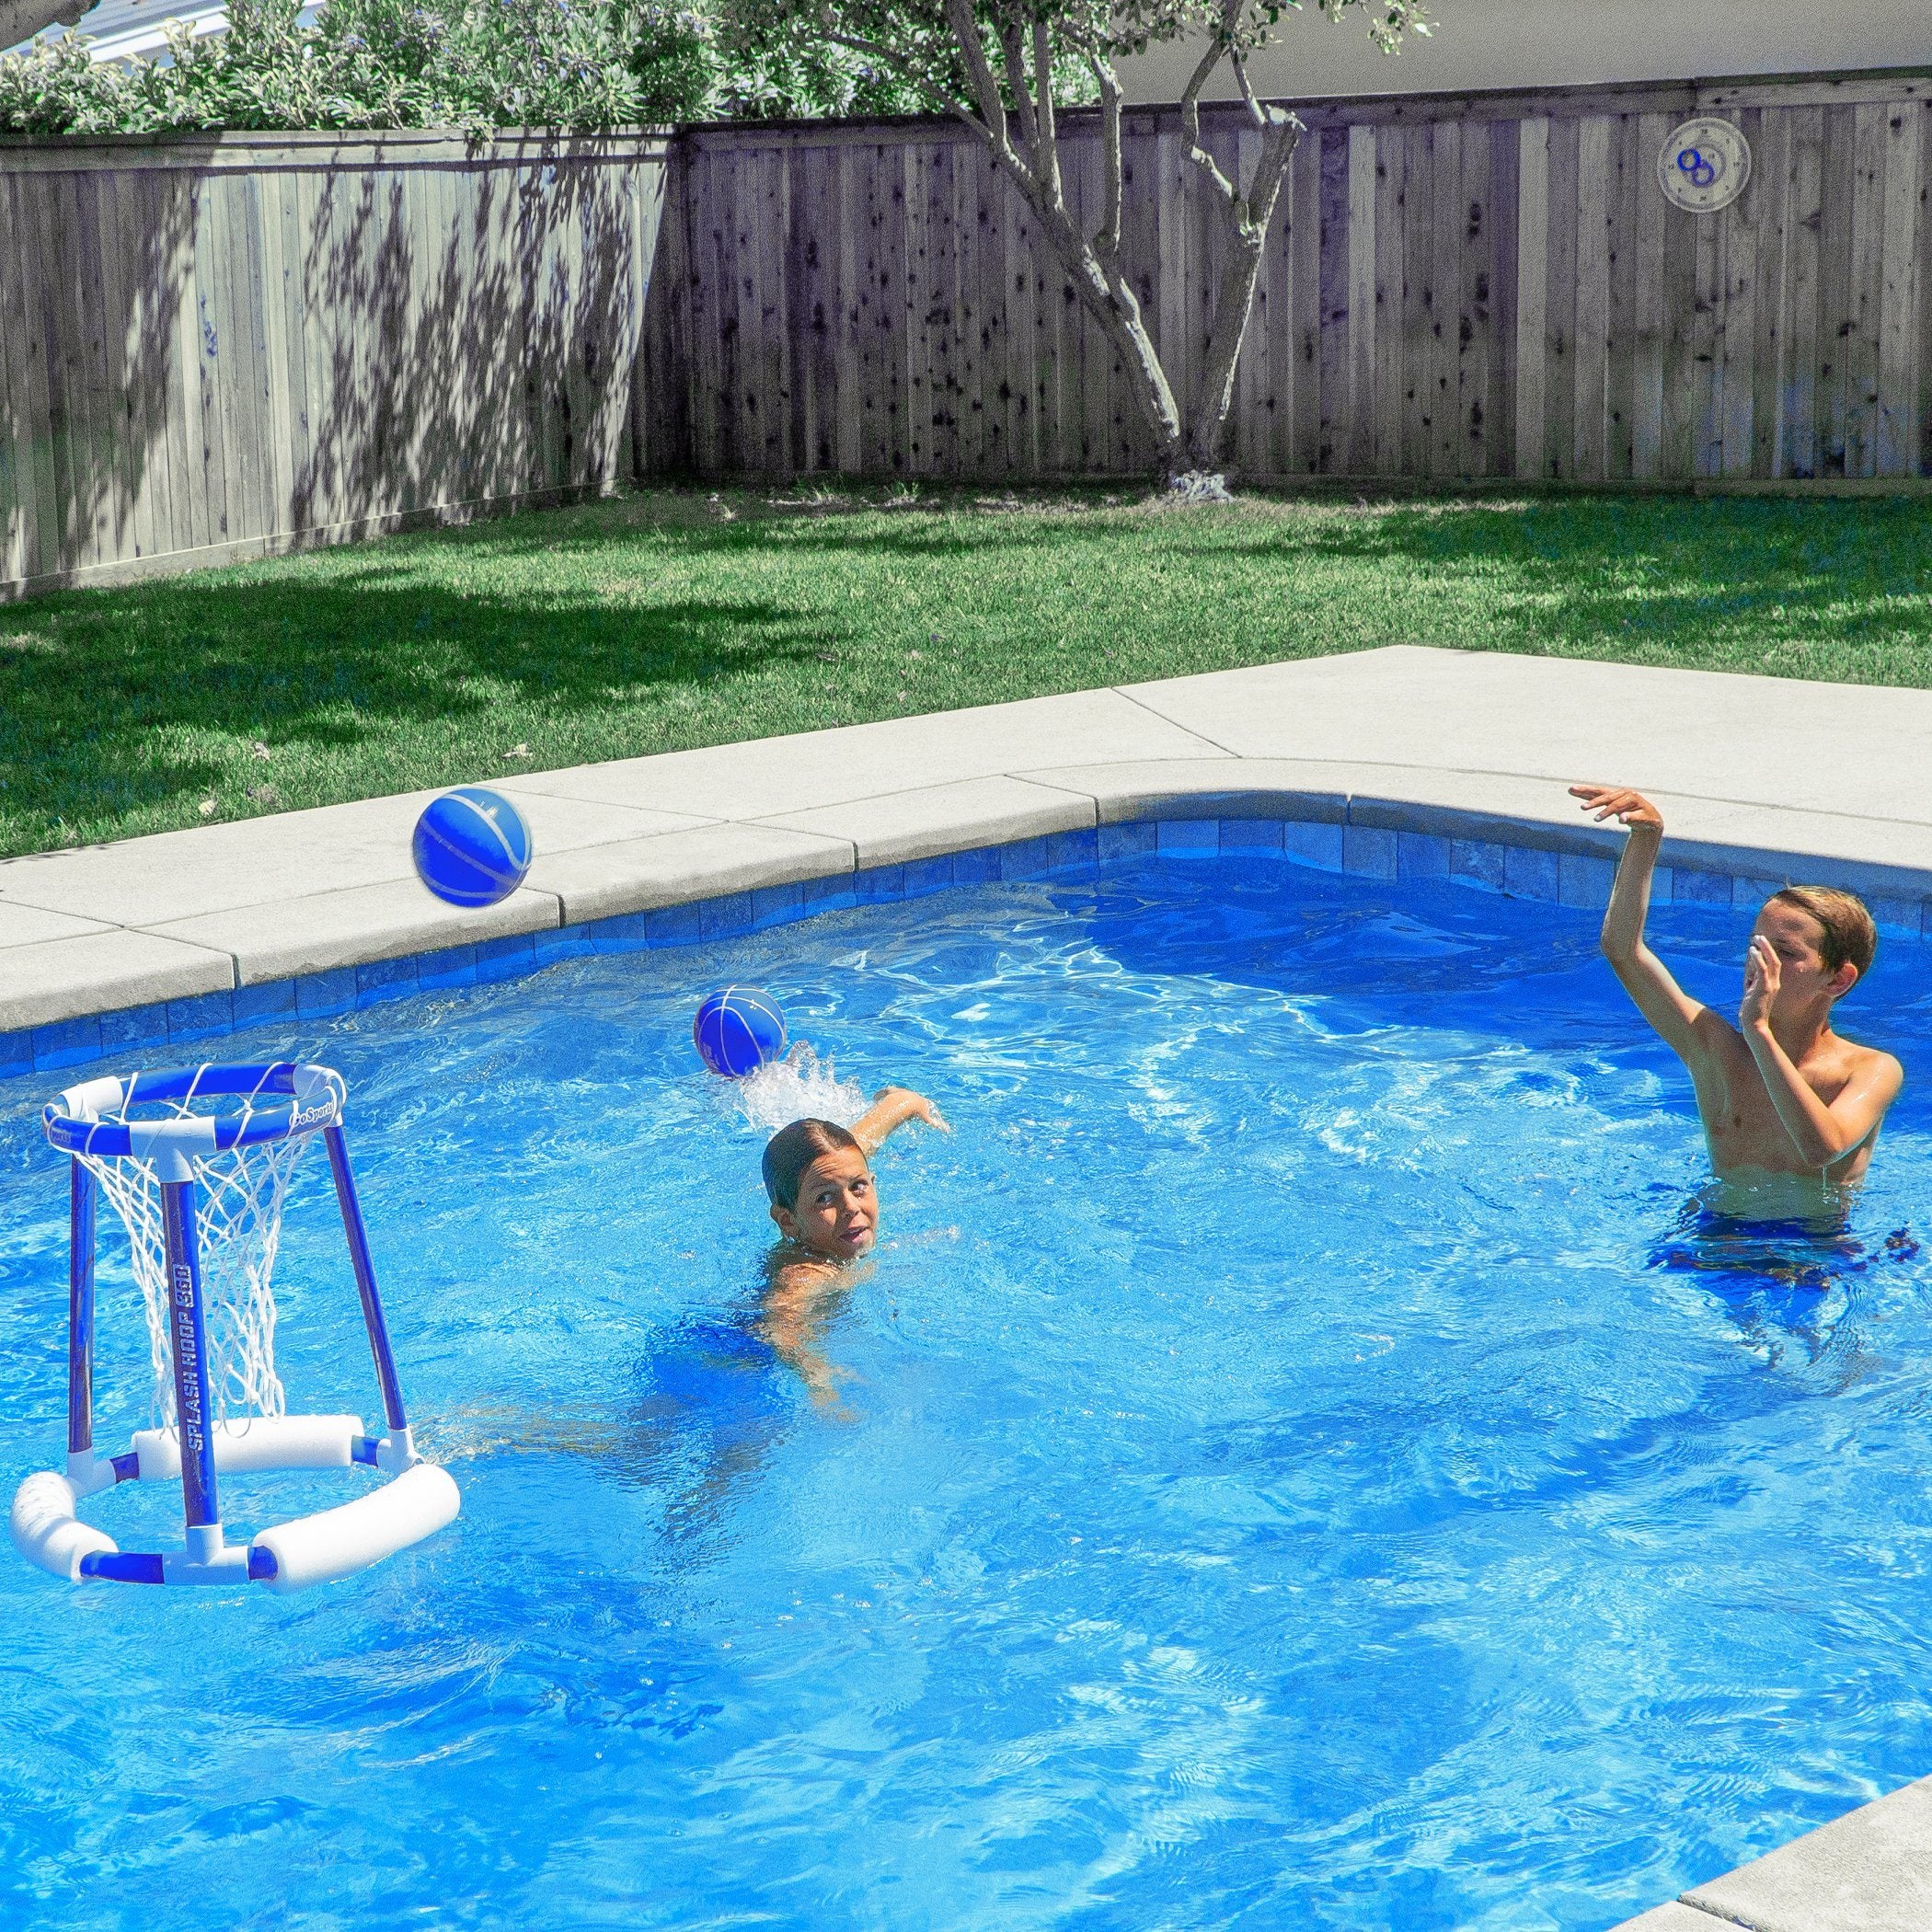 GoSports Splash Hoop 360 Jogo de basquete flutuante para piscina